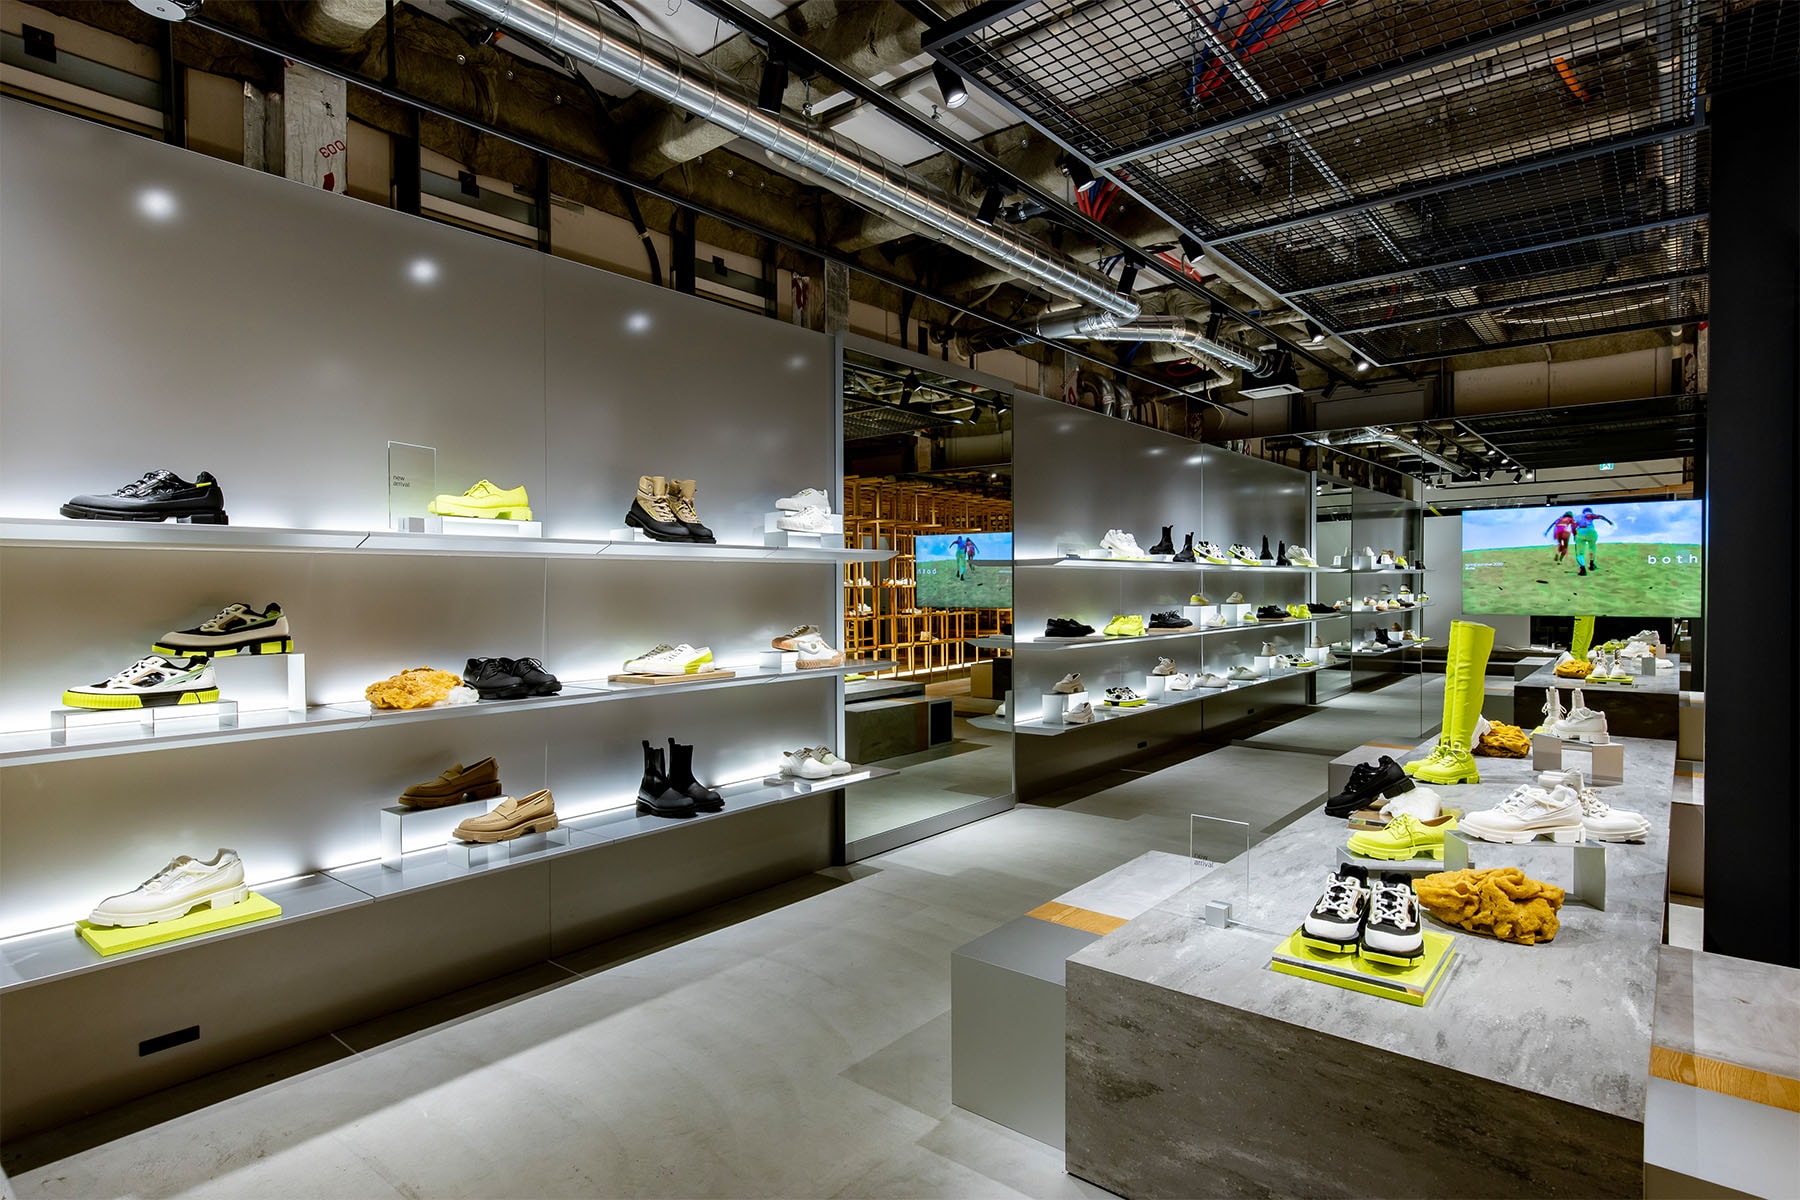 巴黎新晉球鞋品牌 both 全球首間旗艦店正式開幕